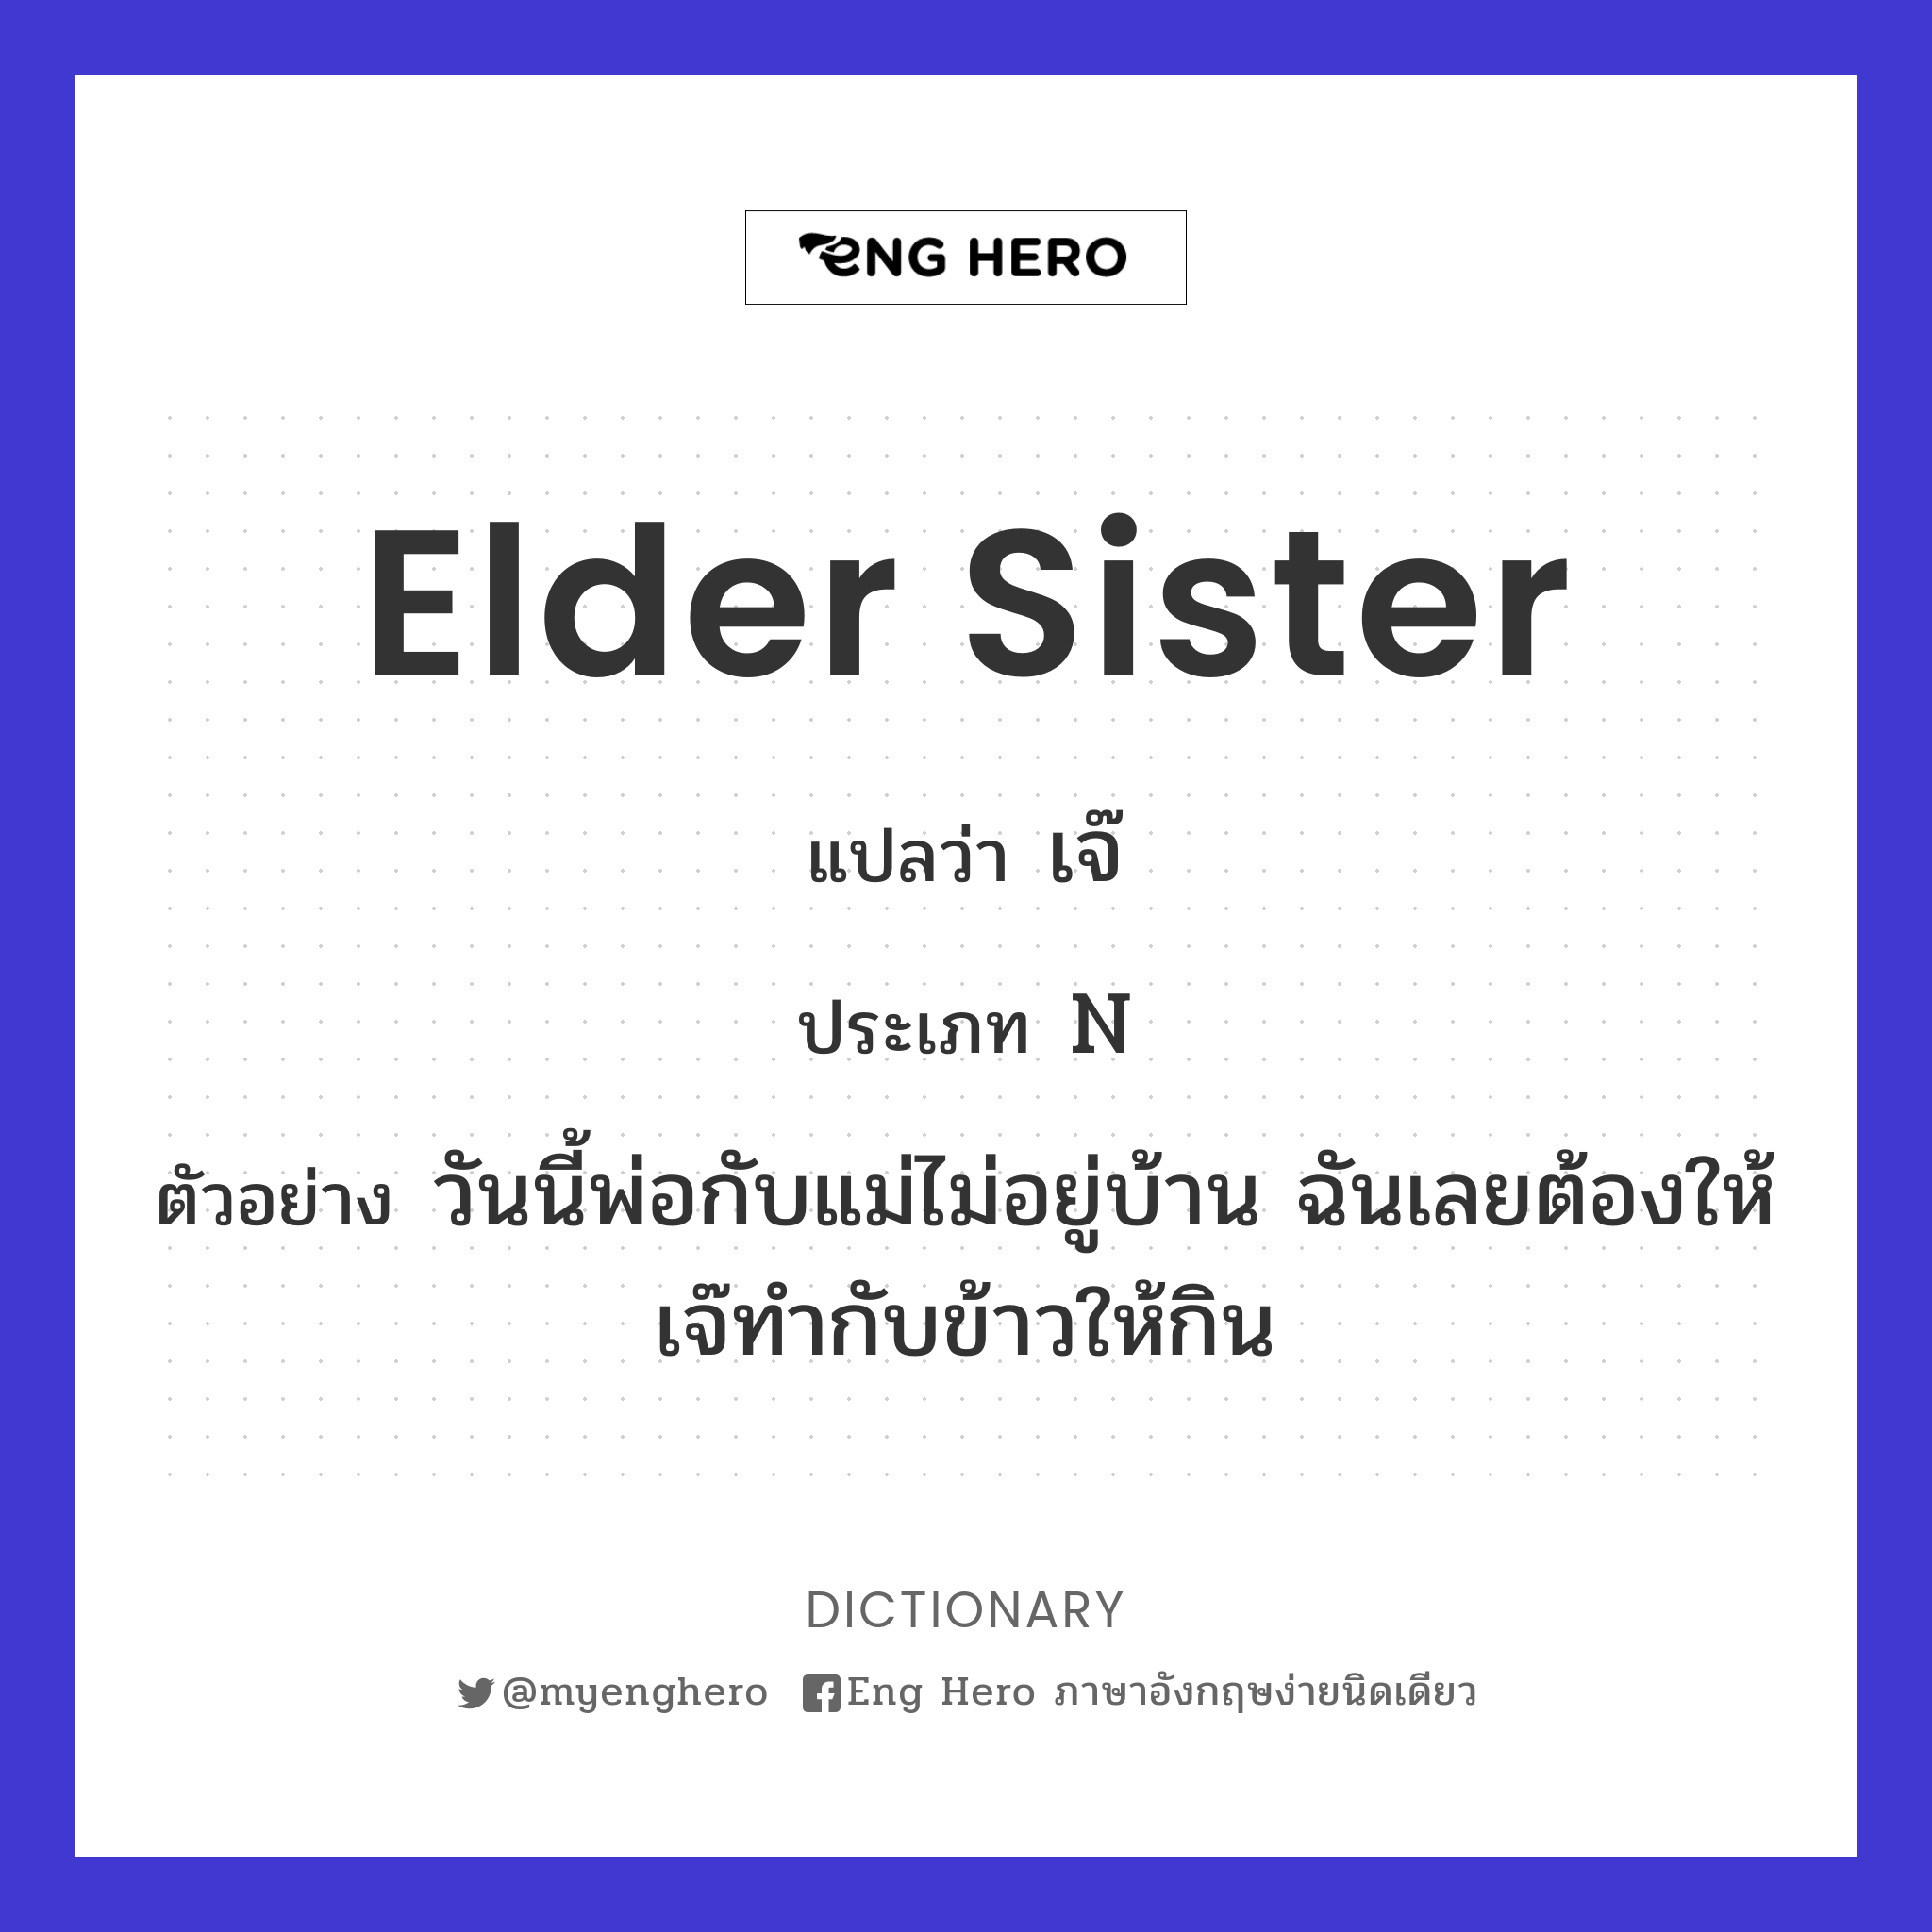 elder sister